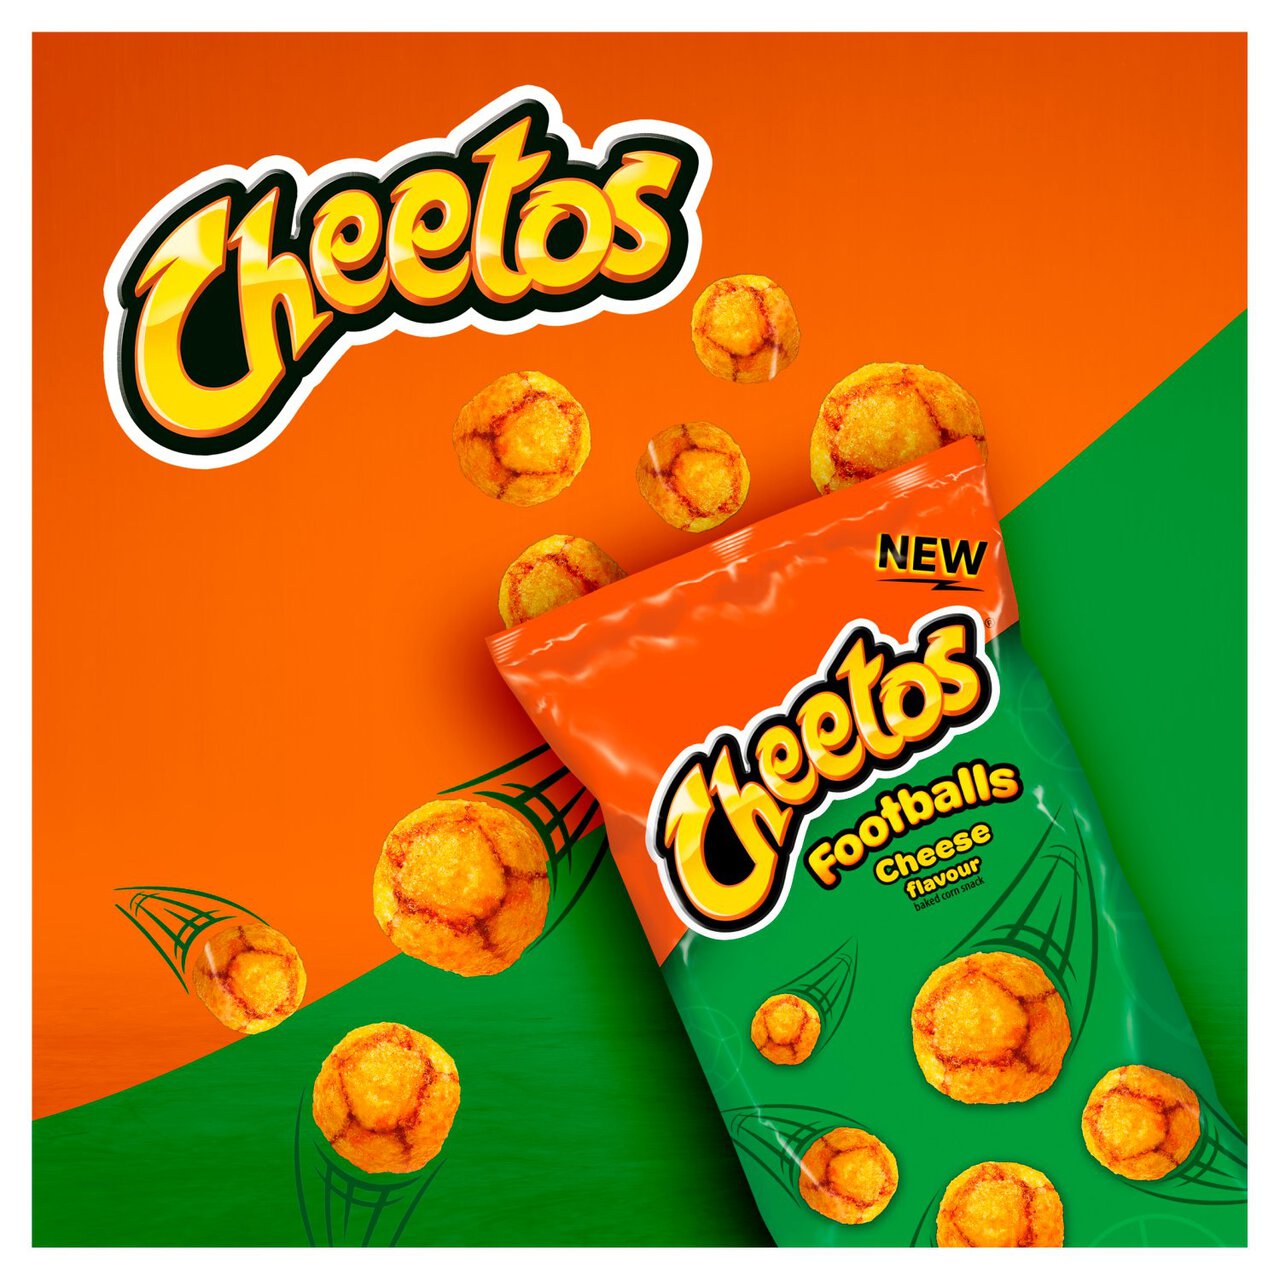 Cheetos Footballs Cheese Sharing Snacks 130g